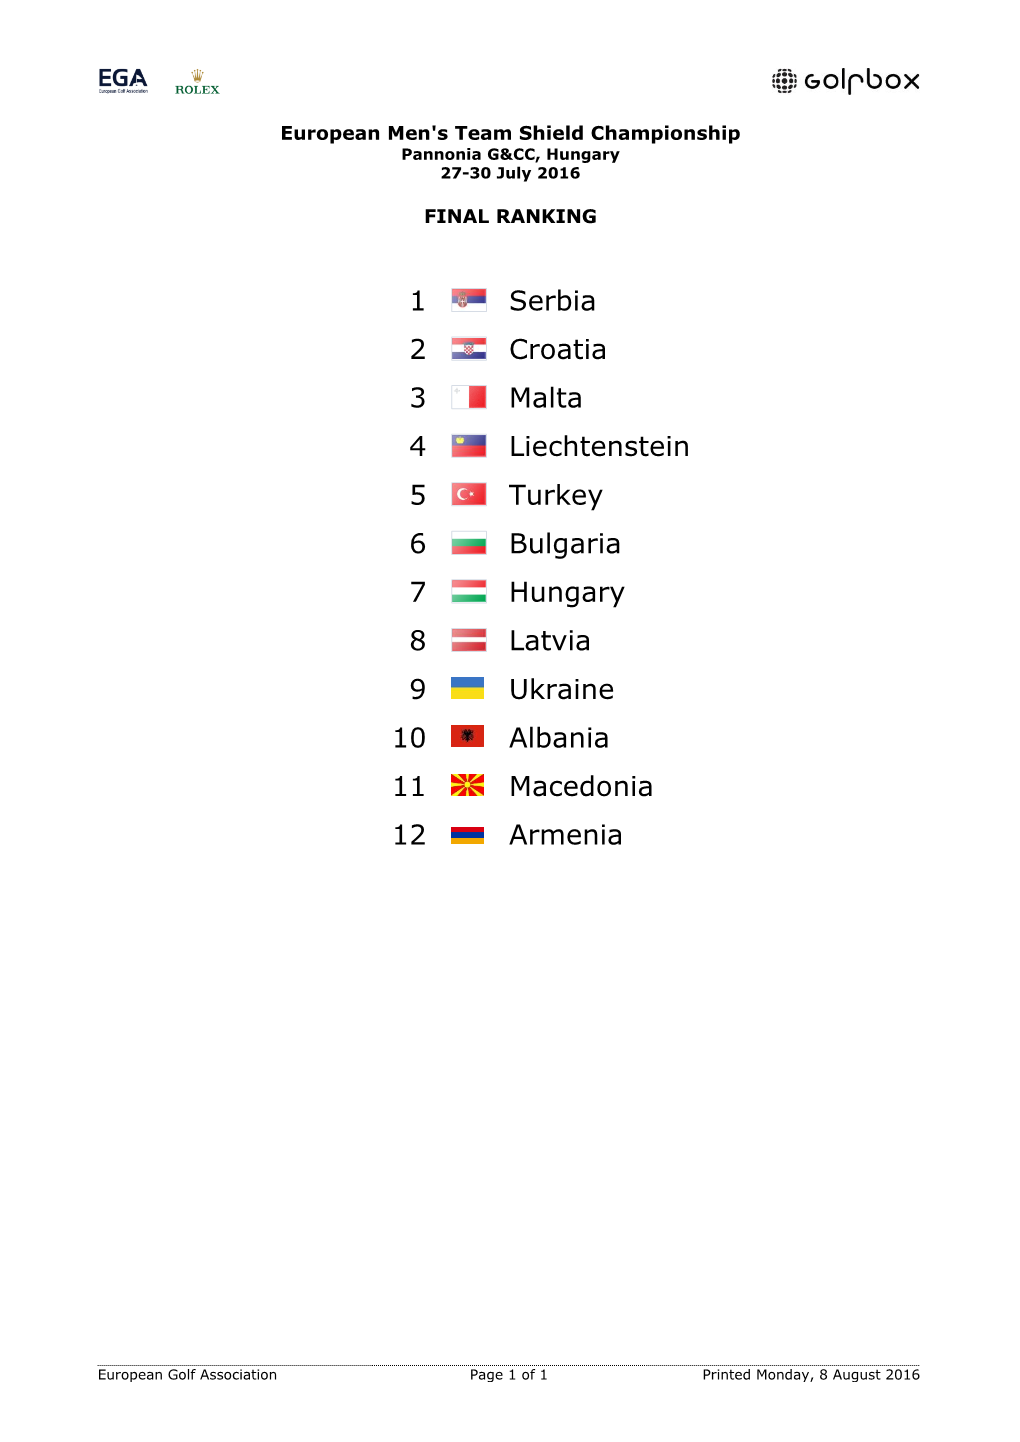 1 Serbia 2 Croatia 3 Malta 4 Liechtenstein 5 Turkey 6 Bulgaria 7